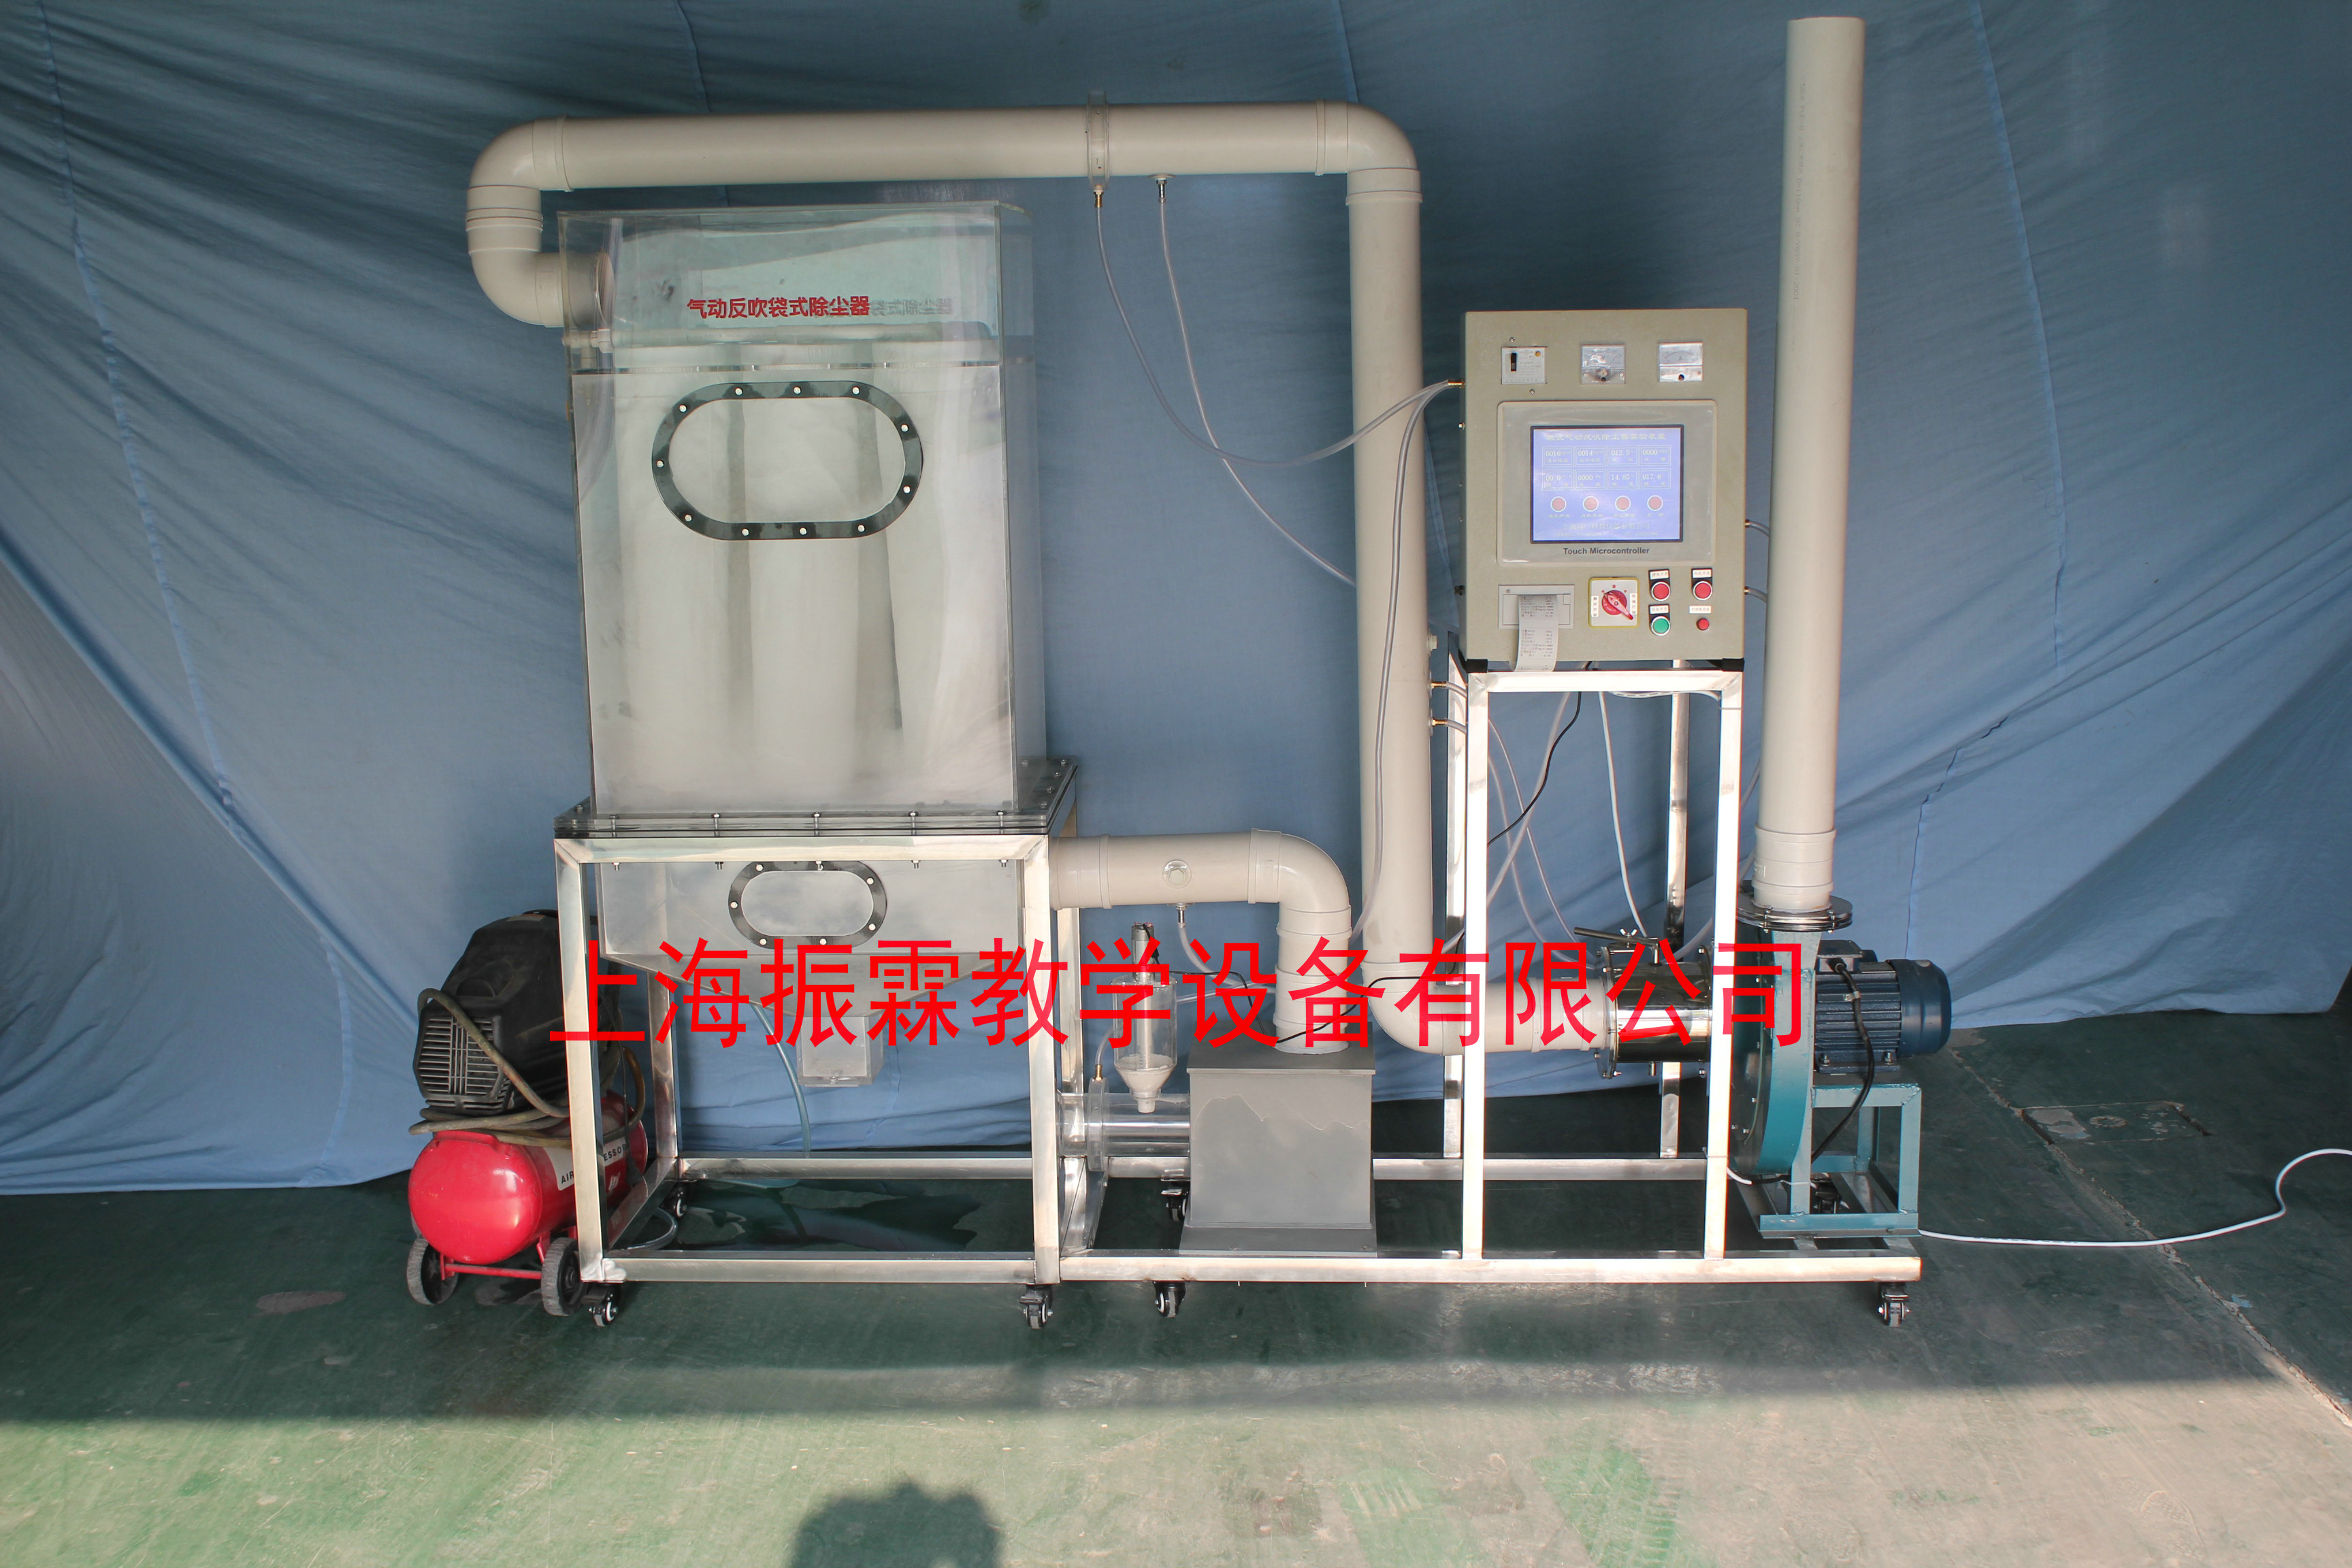 环境工程实验装置,气动反吹袋式除尘器,污水处理实训设备--上海振霖教学设备有限公司